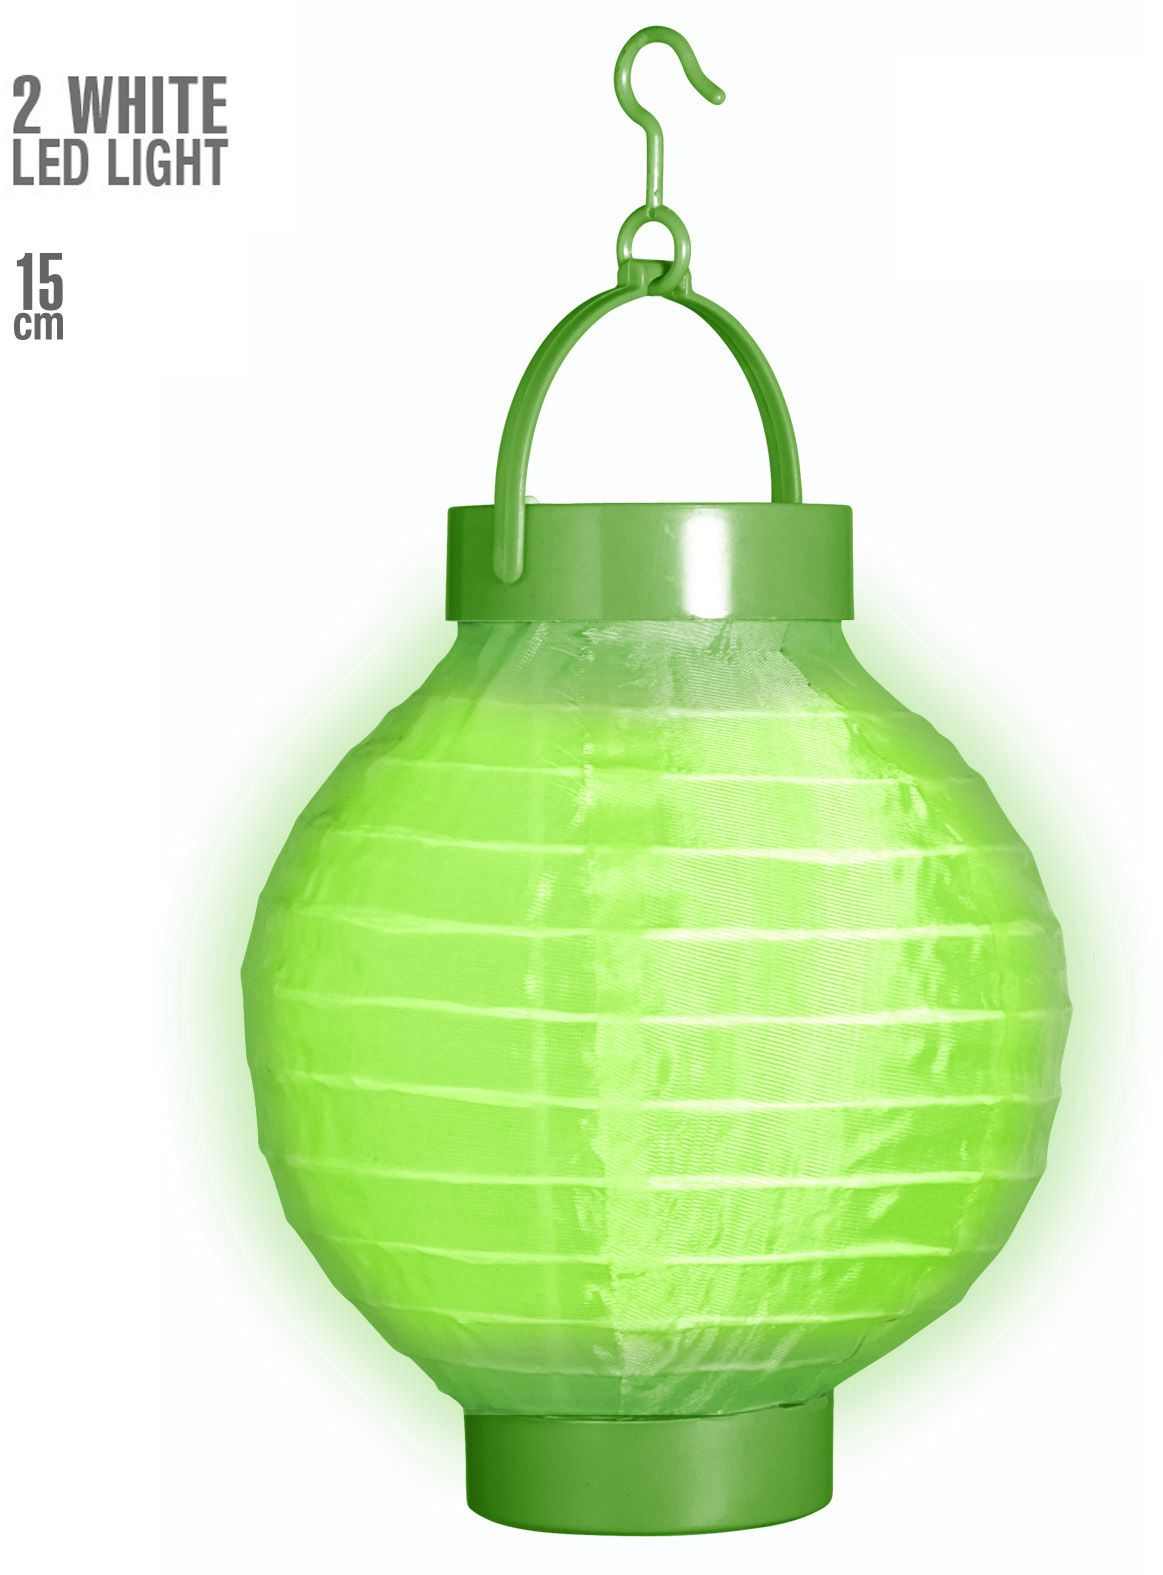 Groene stoffen lantaarn met 2 witte LED lichten